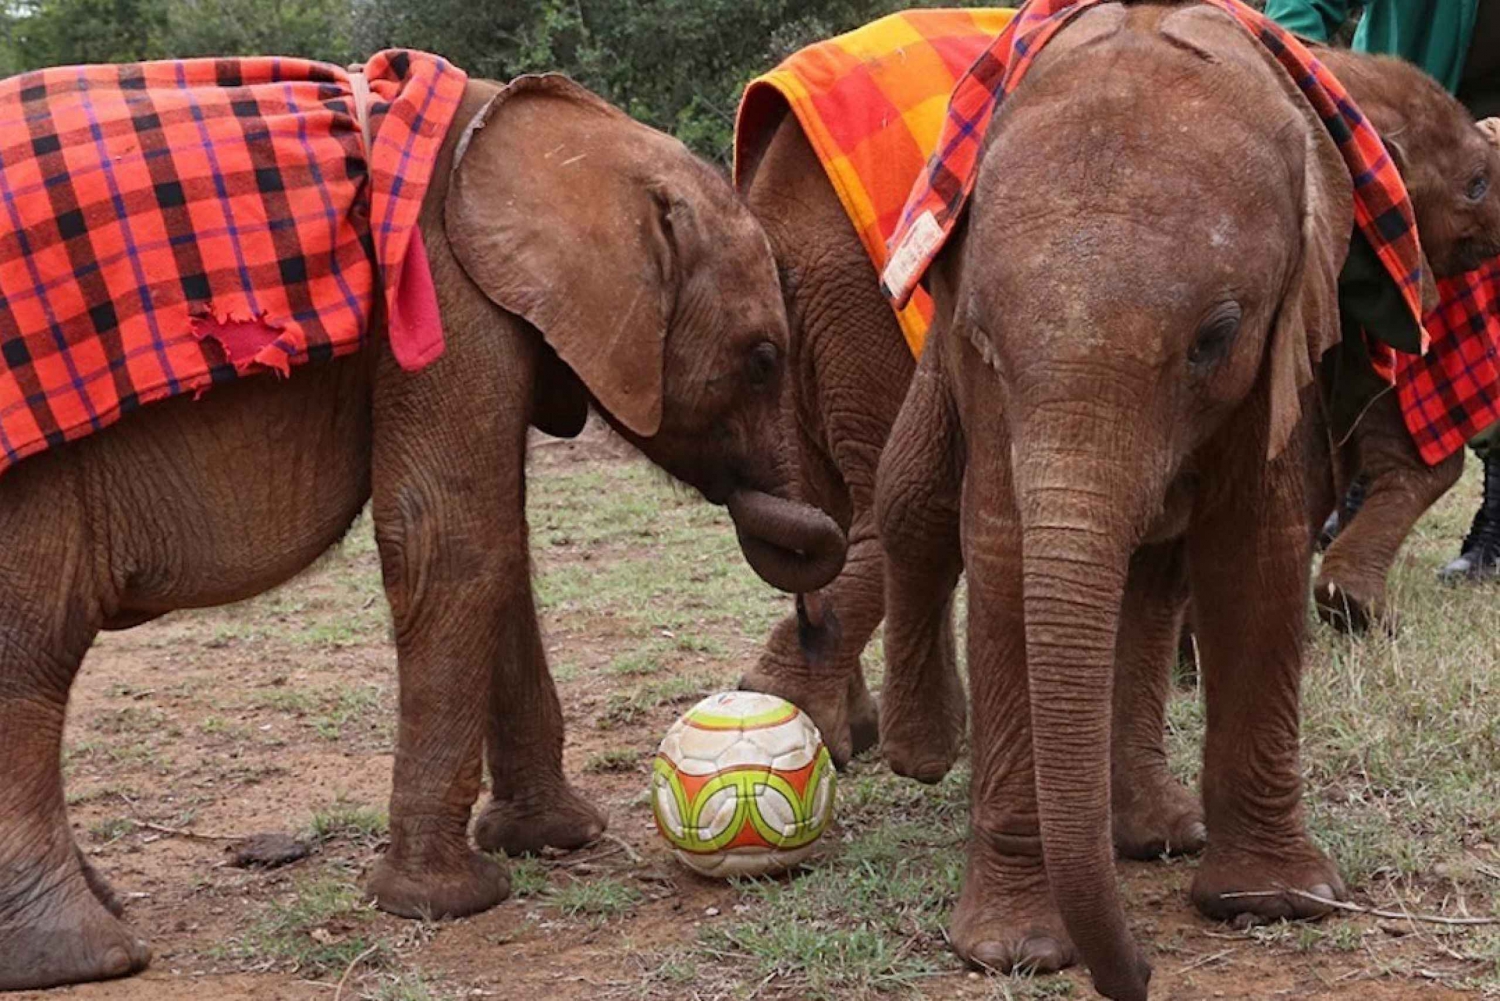 Nairobi: Visita de un día en grupo reducido a los Elefantes, las Jirafas y el Museo